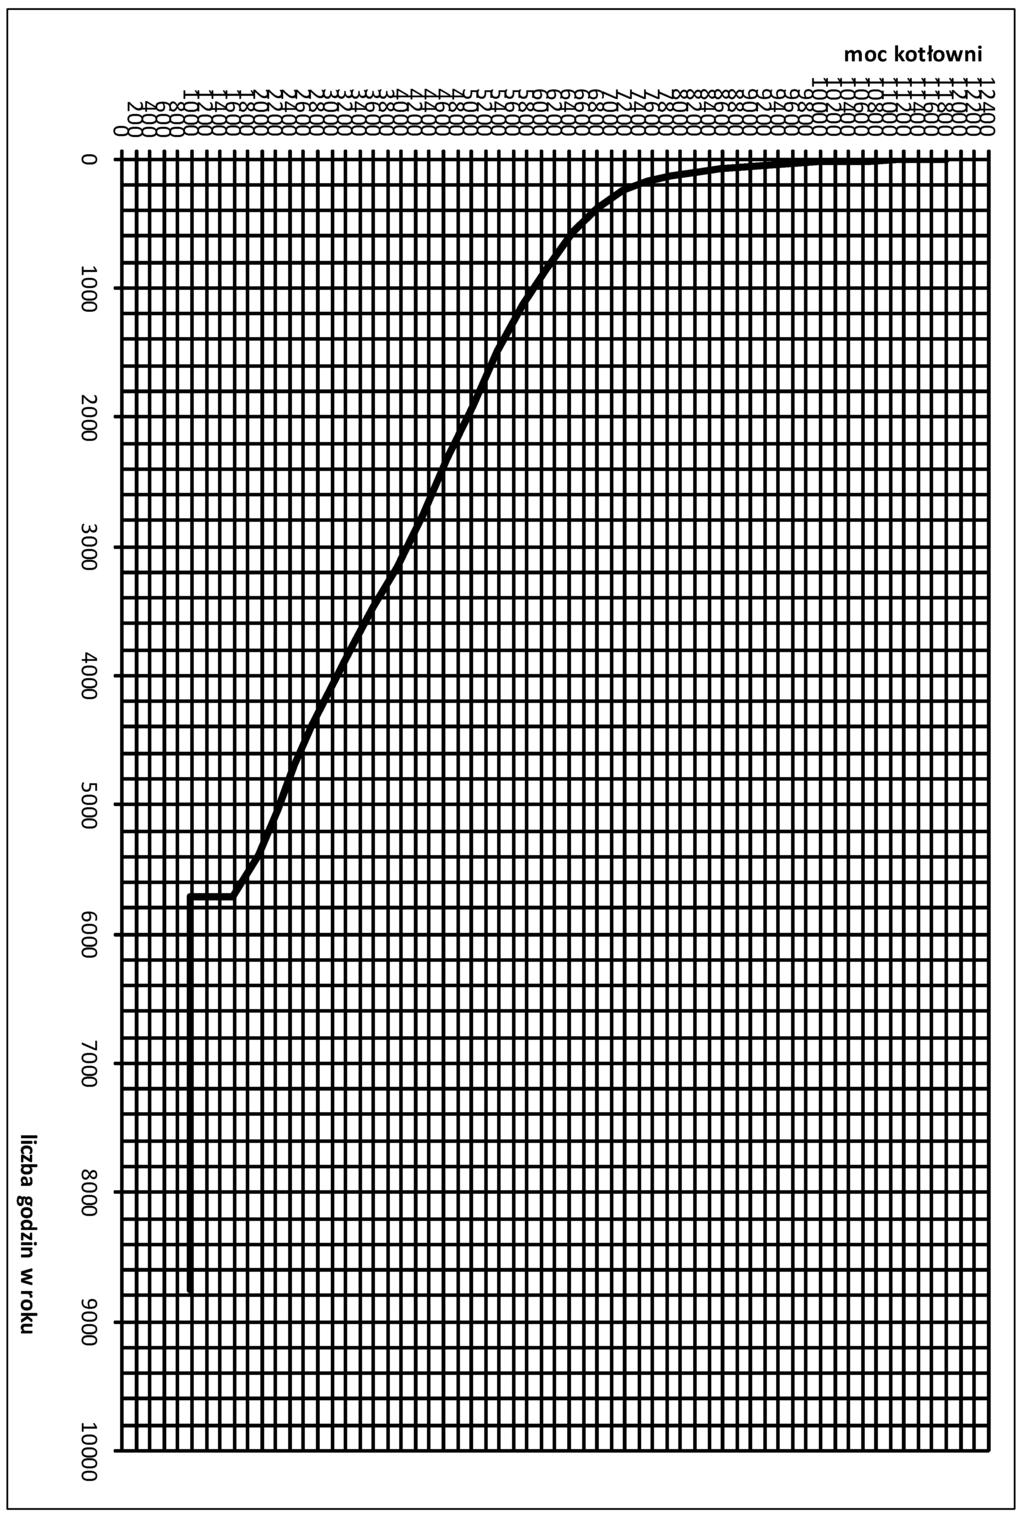 Załącznik 5 - wykres uporządkowany produkcji ciepła KORONOWO-WYKRES UPORZĄDKOWANY PRODUKCJI